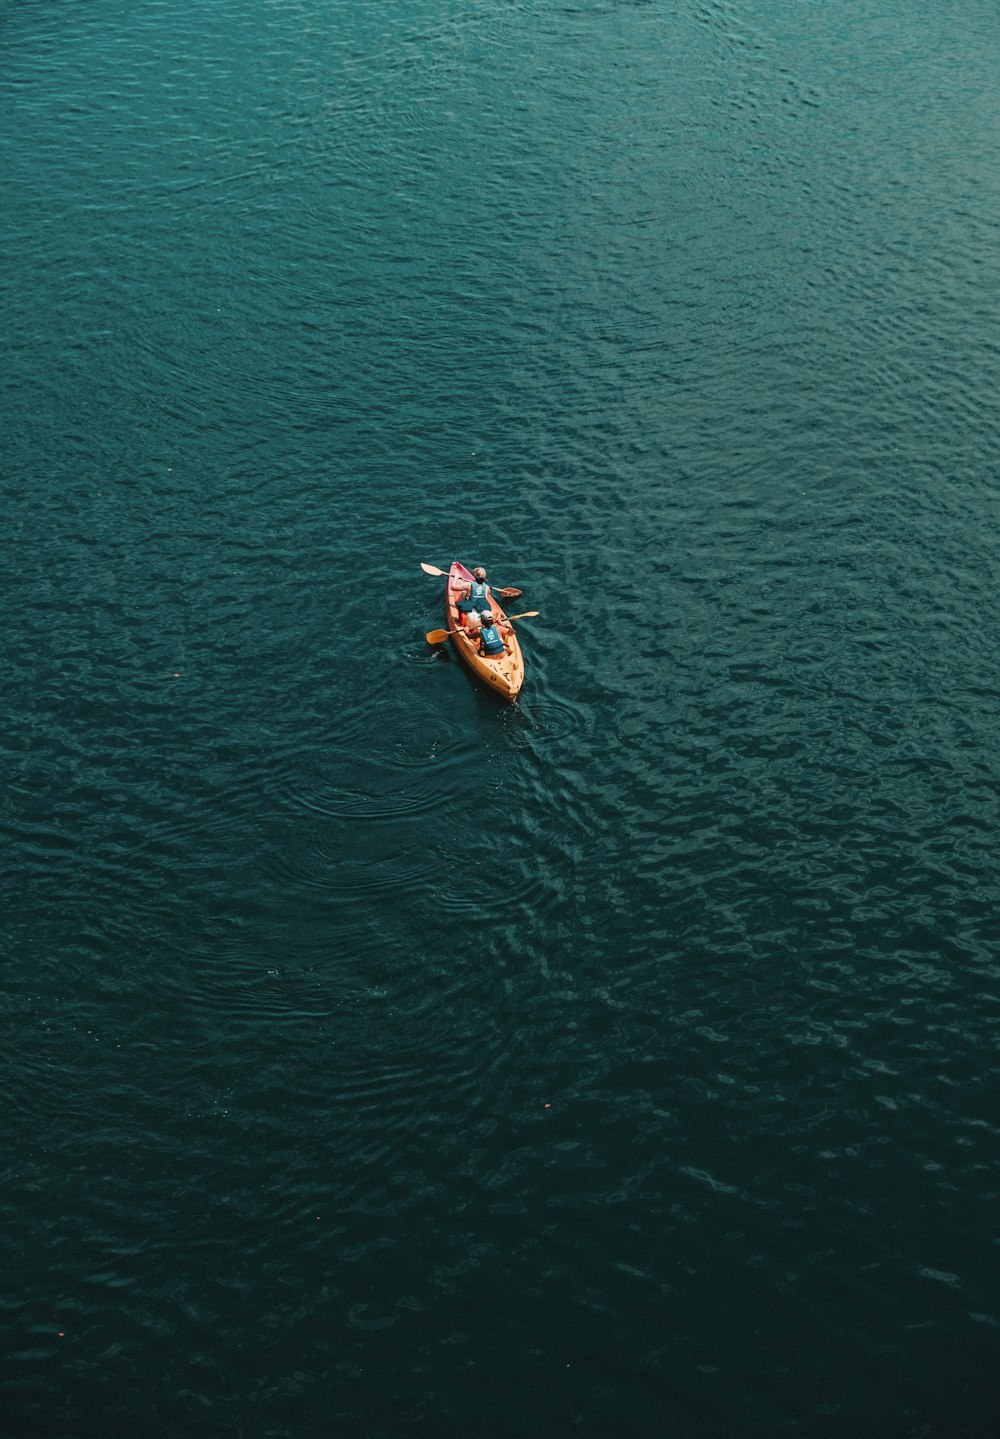 2 person riding on orange kayak on green sea during daytime